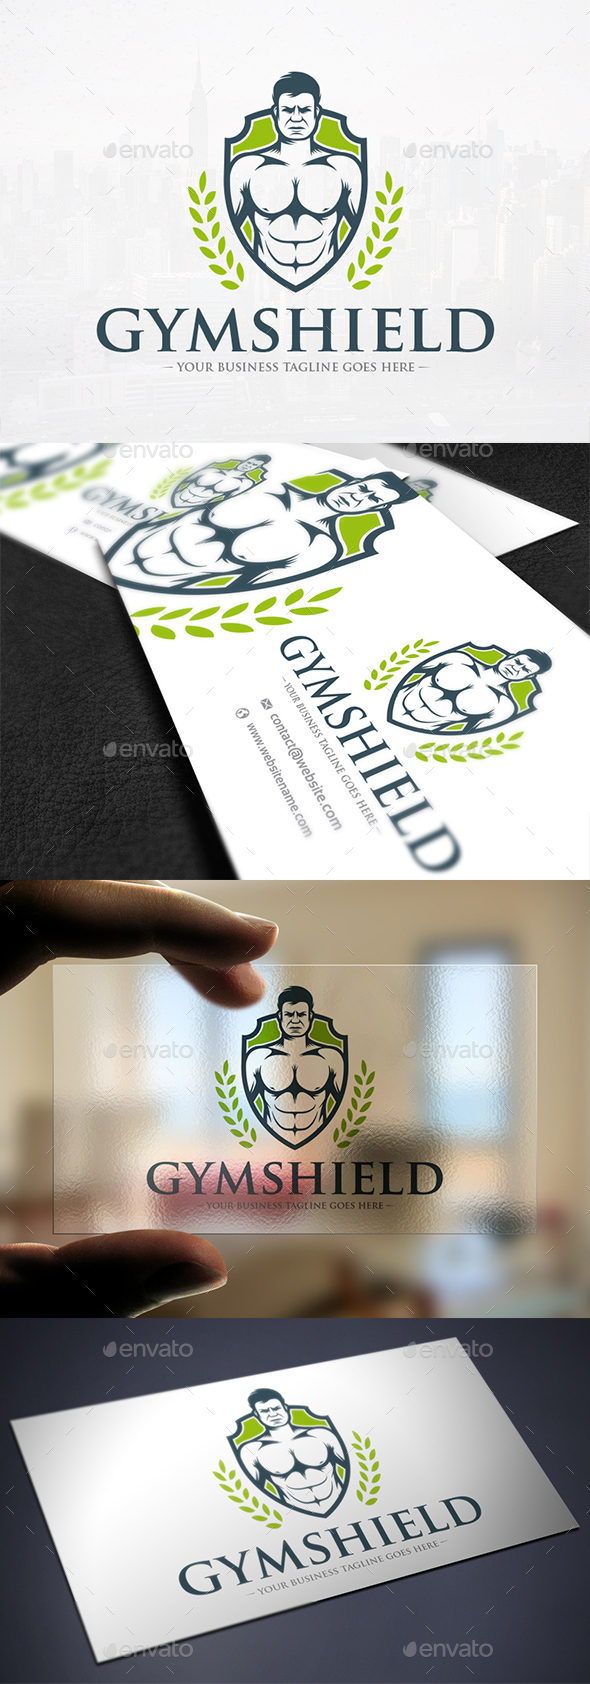 Gym Shield Crest Logo